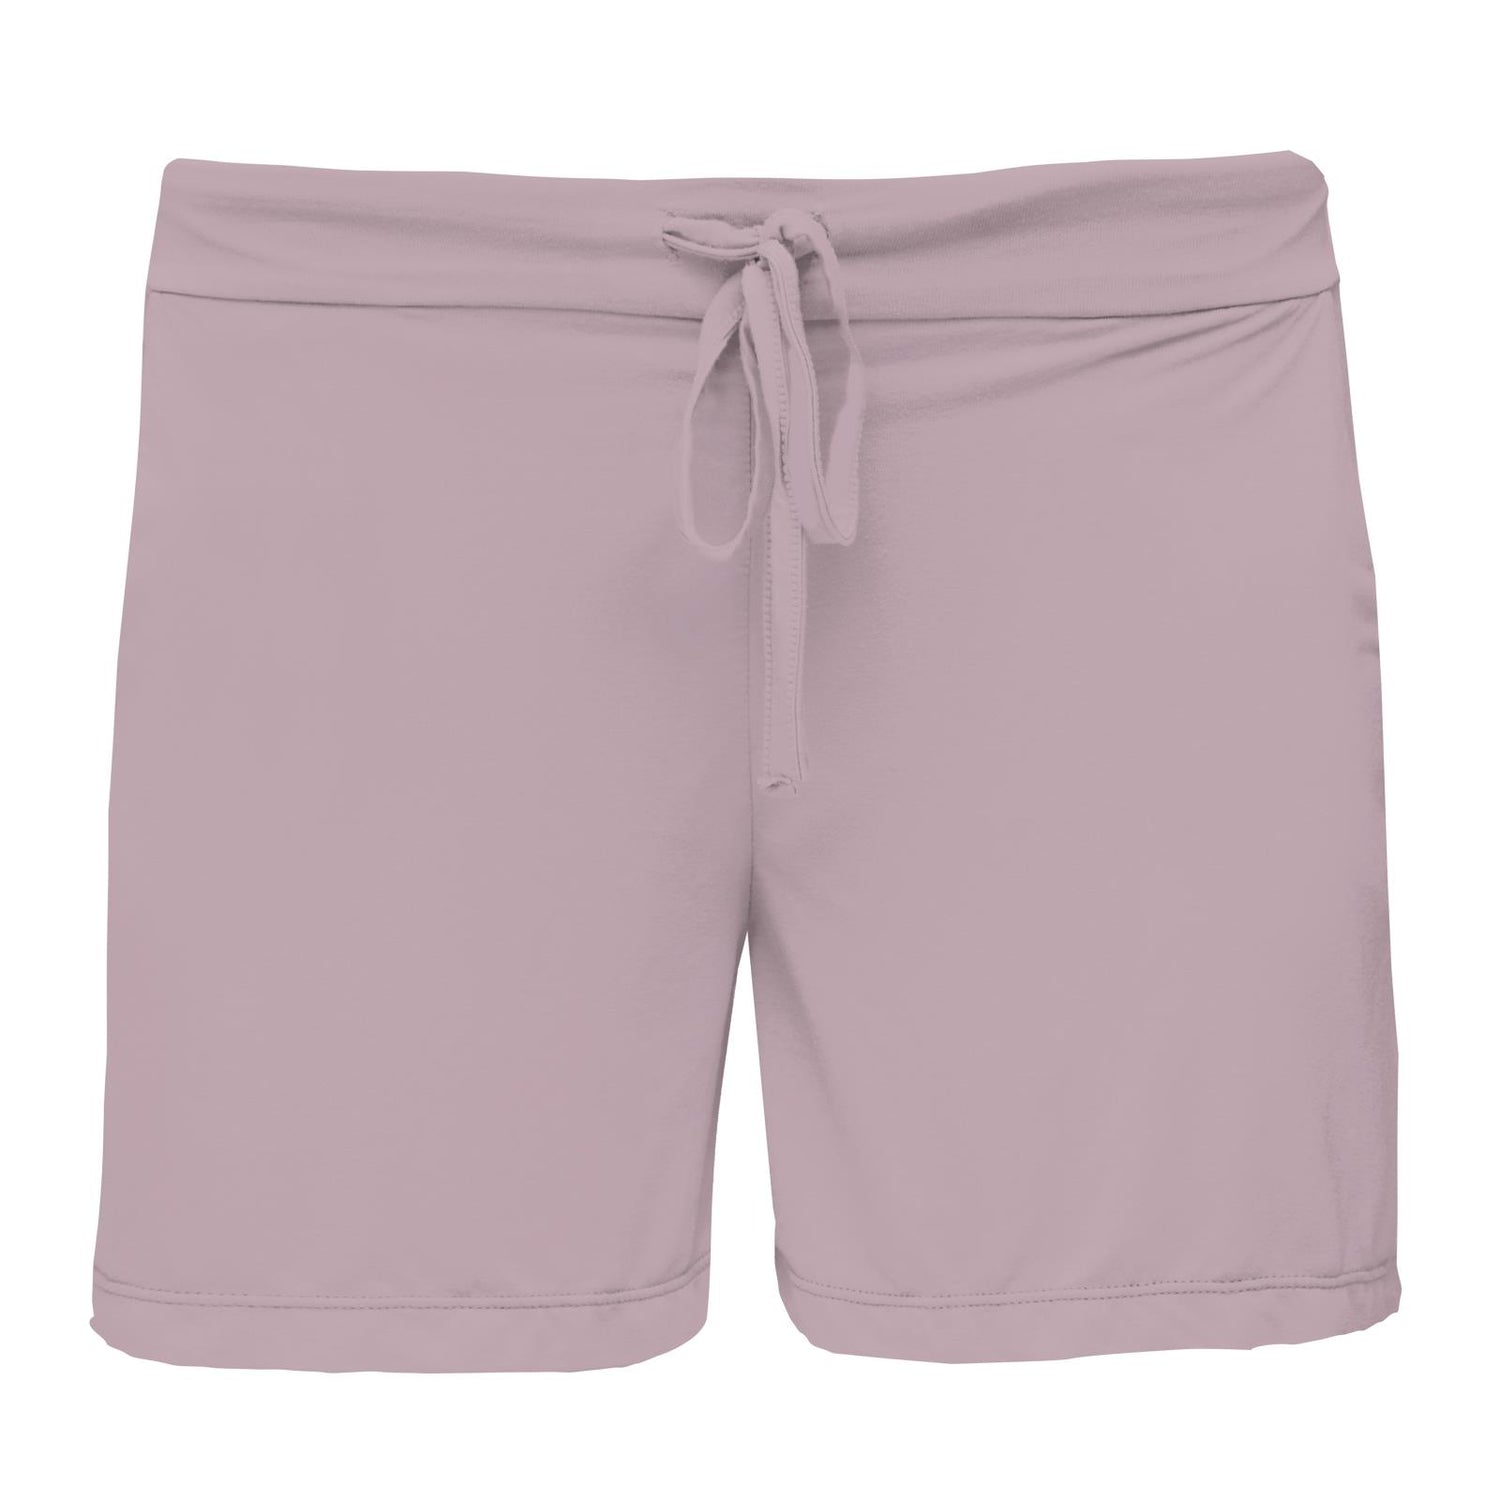 Women's Lounge Shorts in Sweet Pea